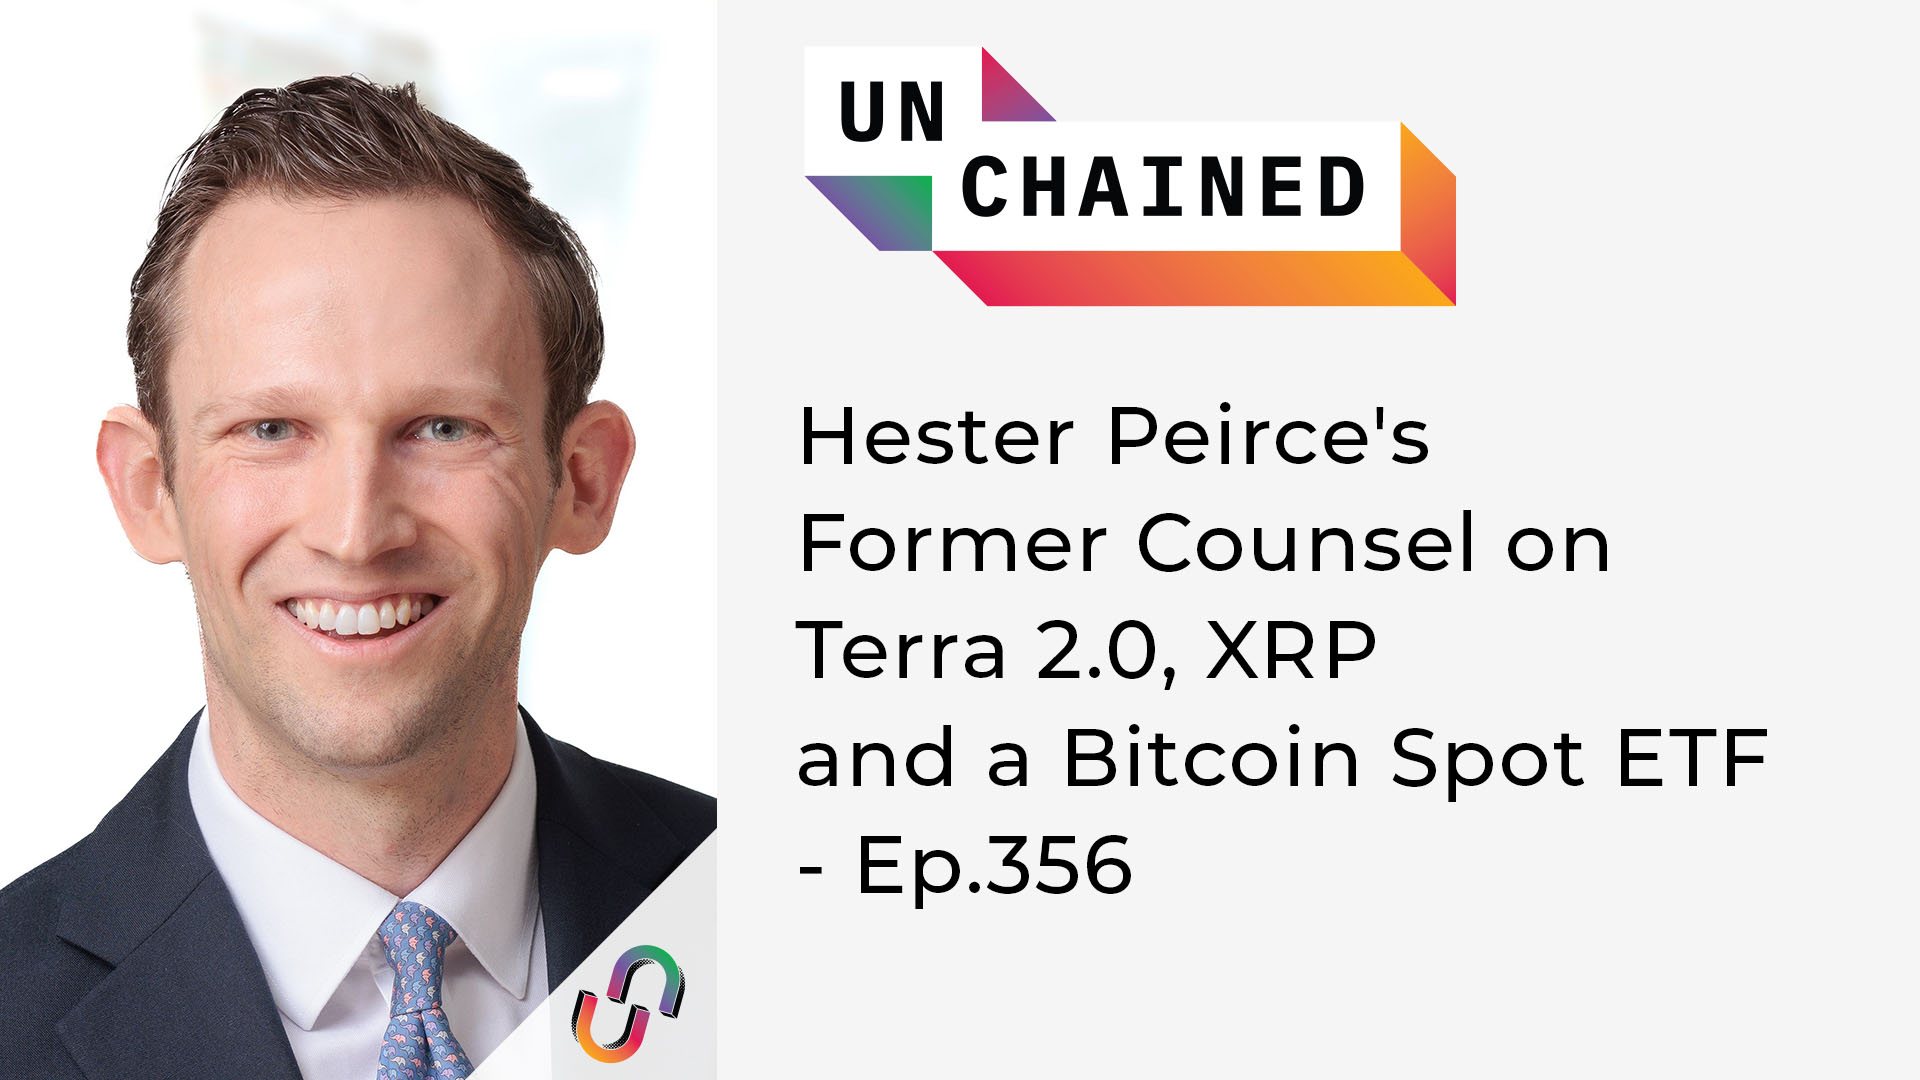 Unchained - Ep.356 - L'ex consulente di Hester Peirce su Terra 2.0, XRP e un Bitcoin Spot ETF